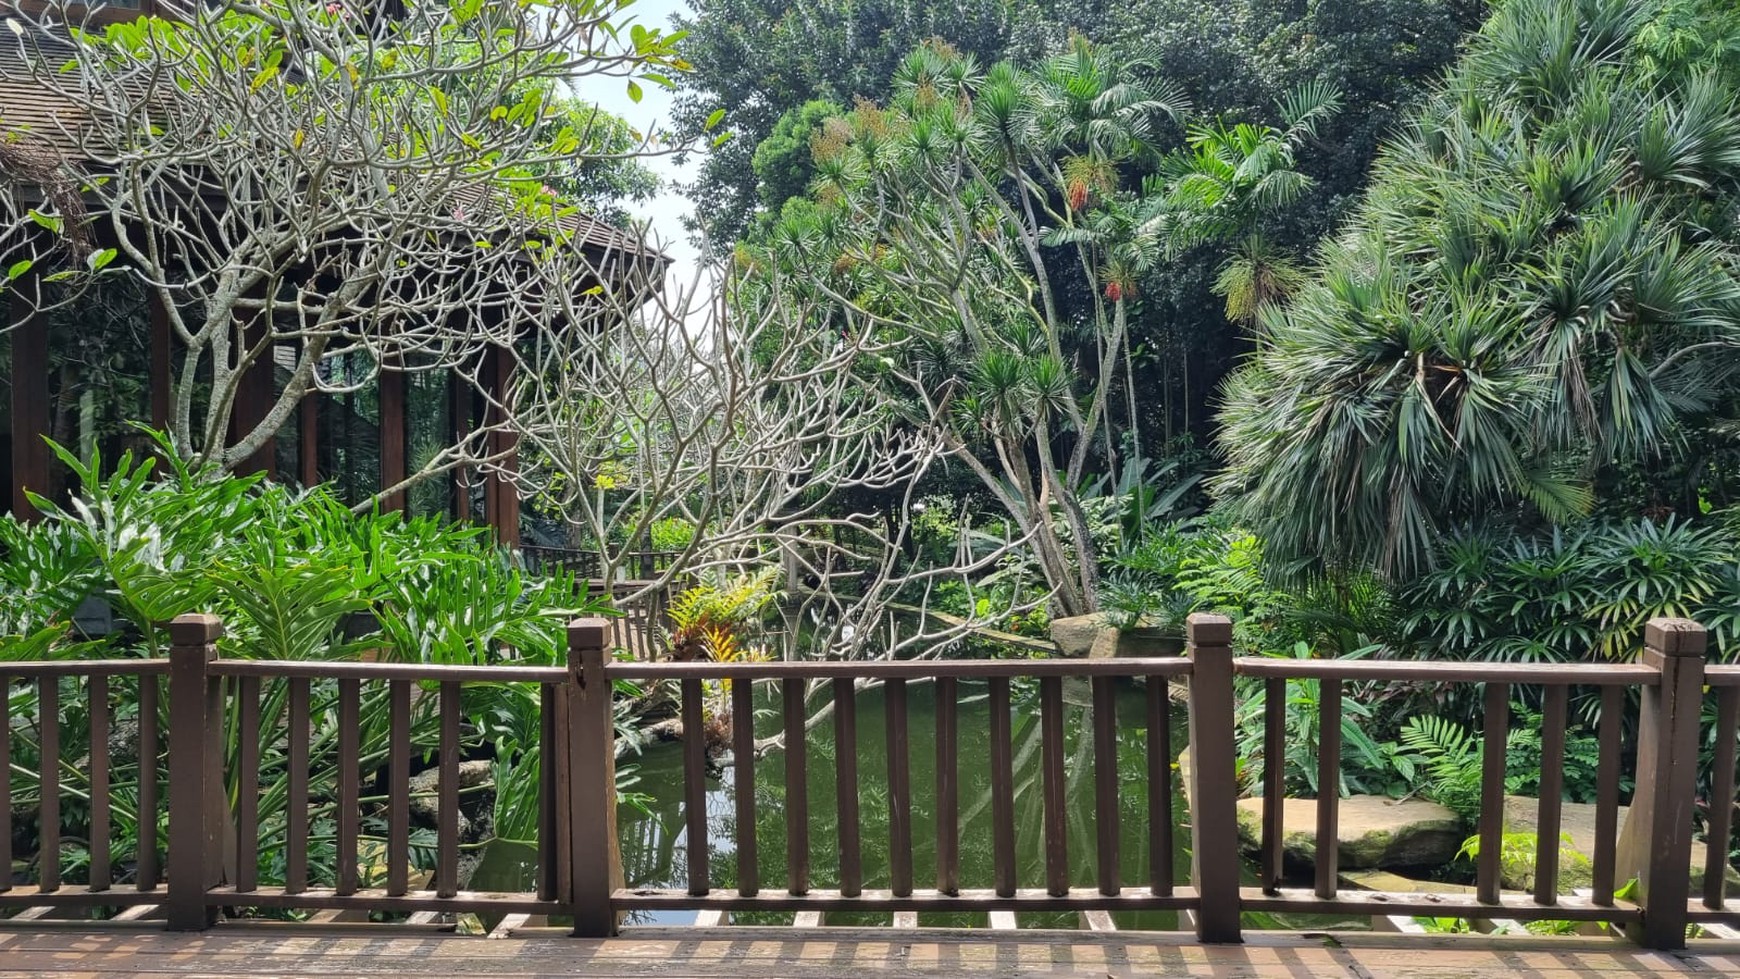 Jual rumah dengan luas 4.081m2 di Taman Golf lippo karawaci Tangerang